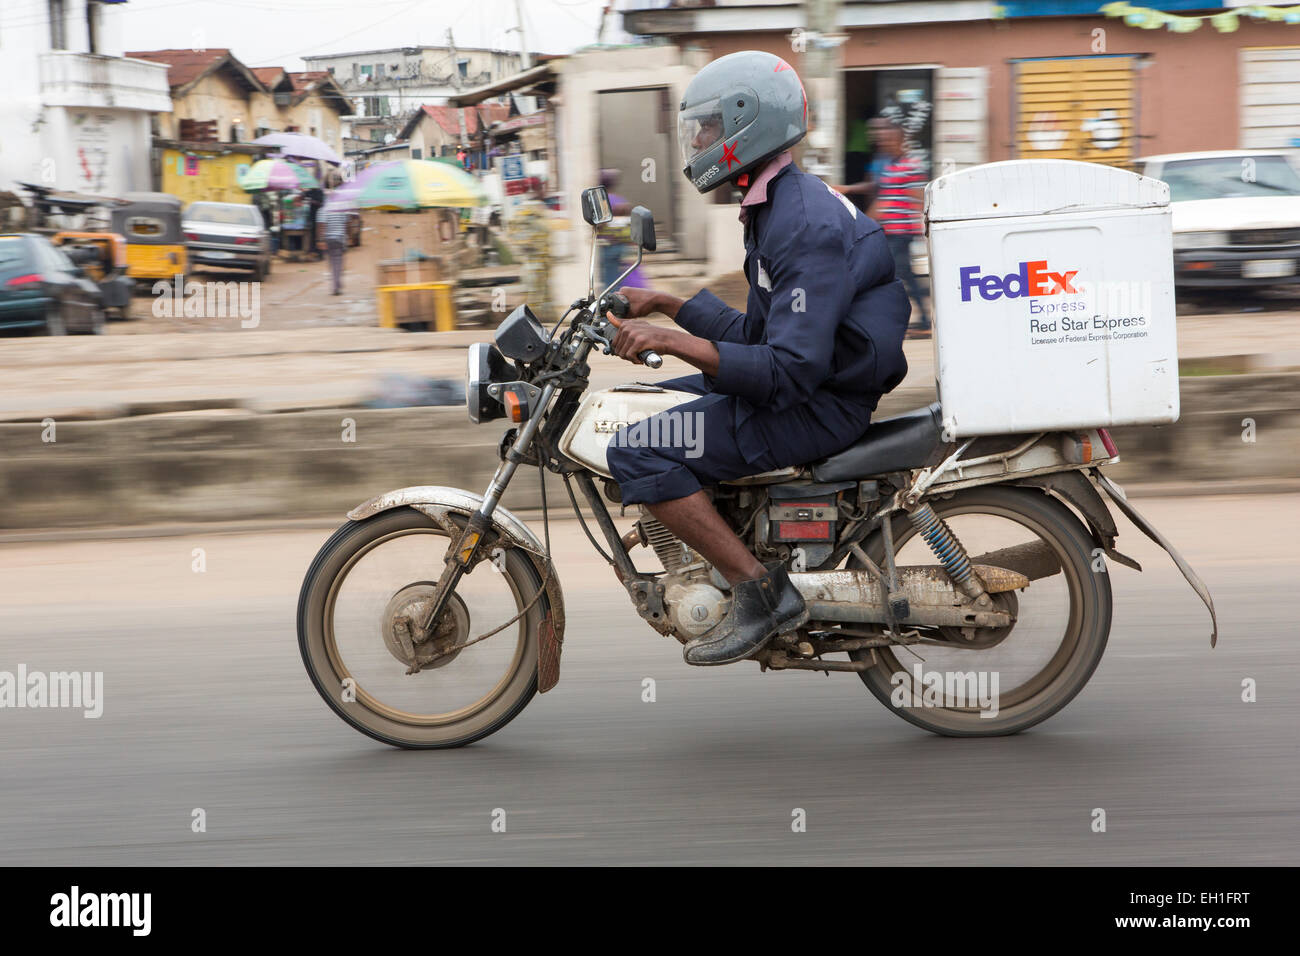 Lagos, Nigeria ; vélo de livraison Fedex au travail Banque D'Images